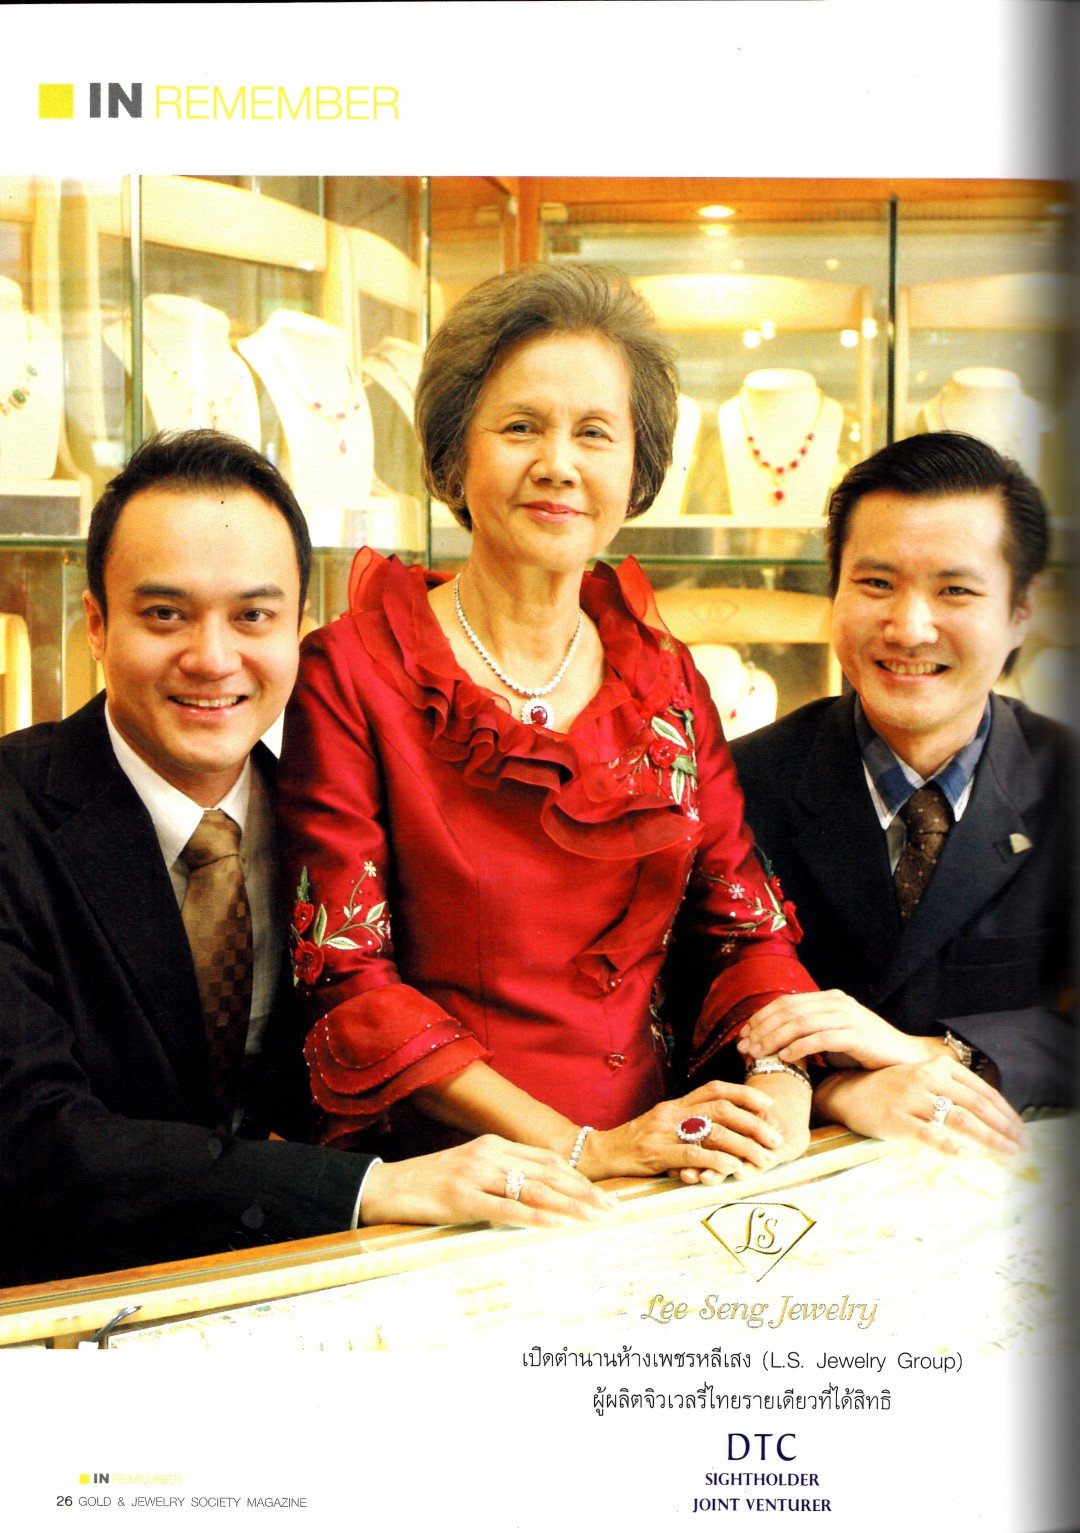 สัมภาษณ์พิเศษ Lee Seng Jewelry ในนิตยสาร Gold & Jewelry Society ประจำเดือนพฤษภาคม - มิถุนายน 2015